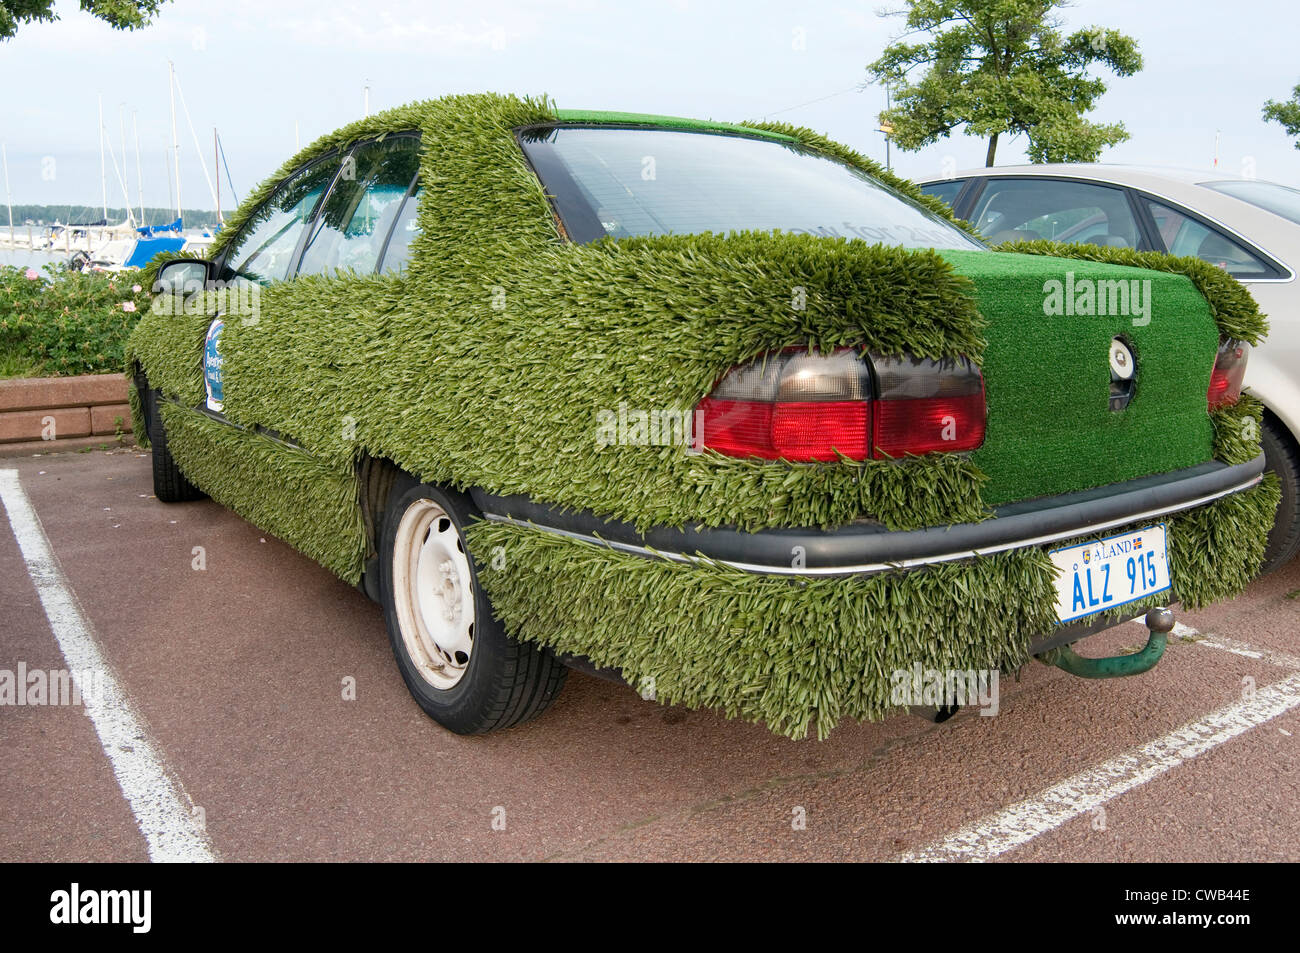 Dans l'herbe couverte de voiture véhicule promotionnel pour club de golf putting green en gazon artificiel eyecatching Banque D'Images